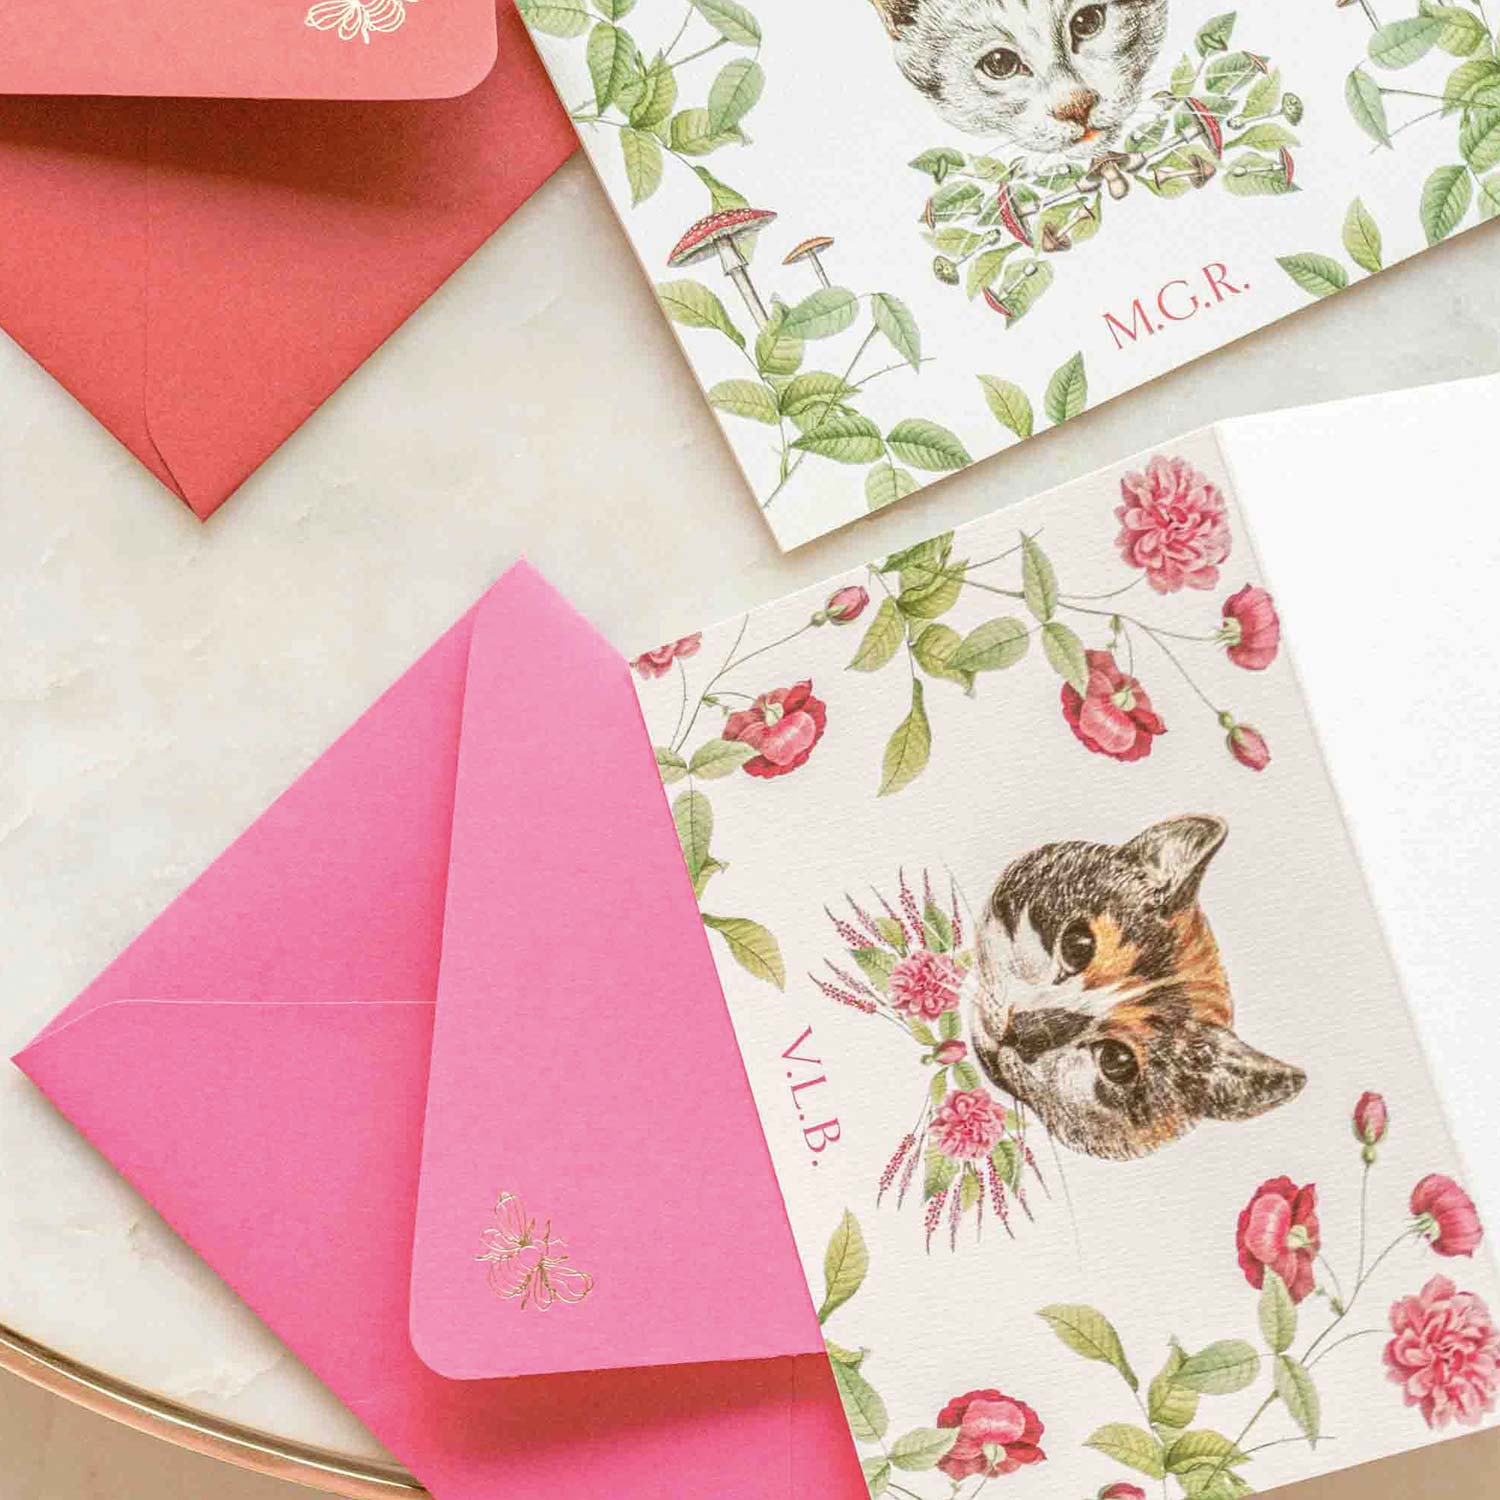 Cartões personalizados de gato e botanica com envelope colorido rosa e vermelho para papelaria personalizada no estilo cottage core